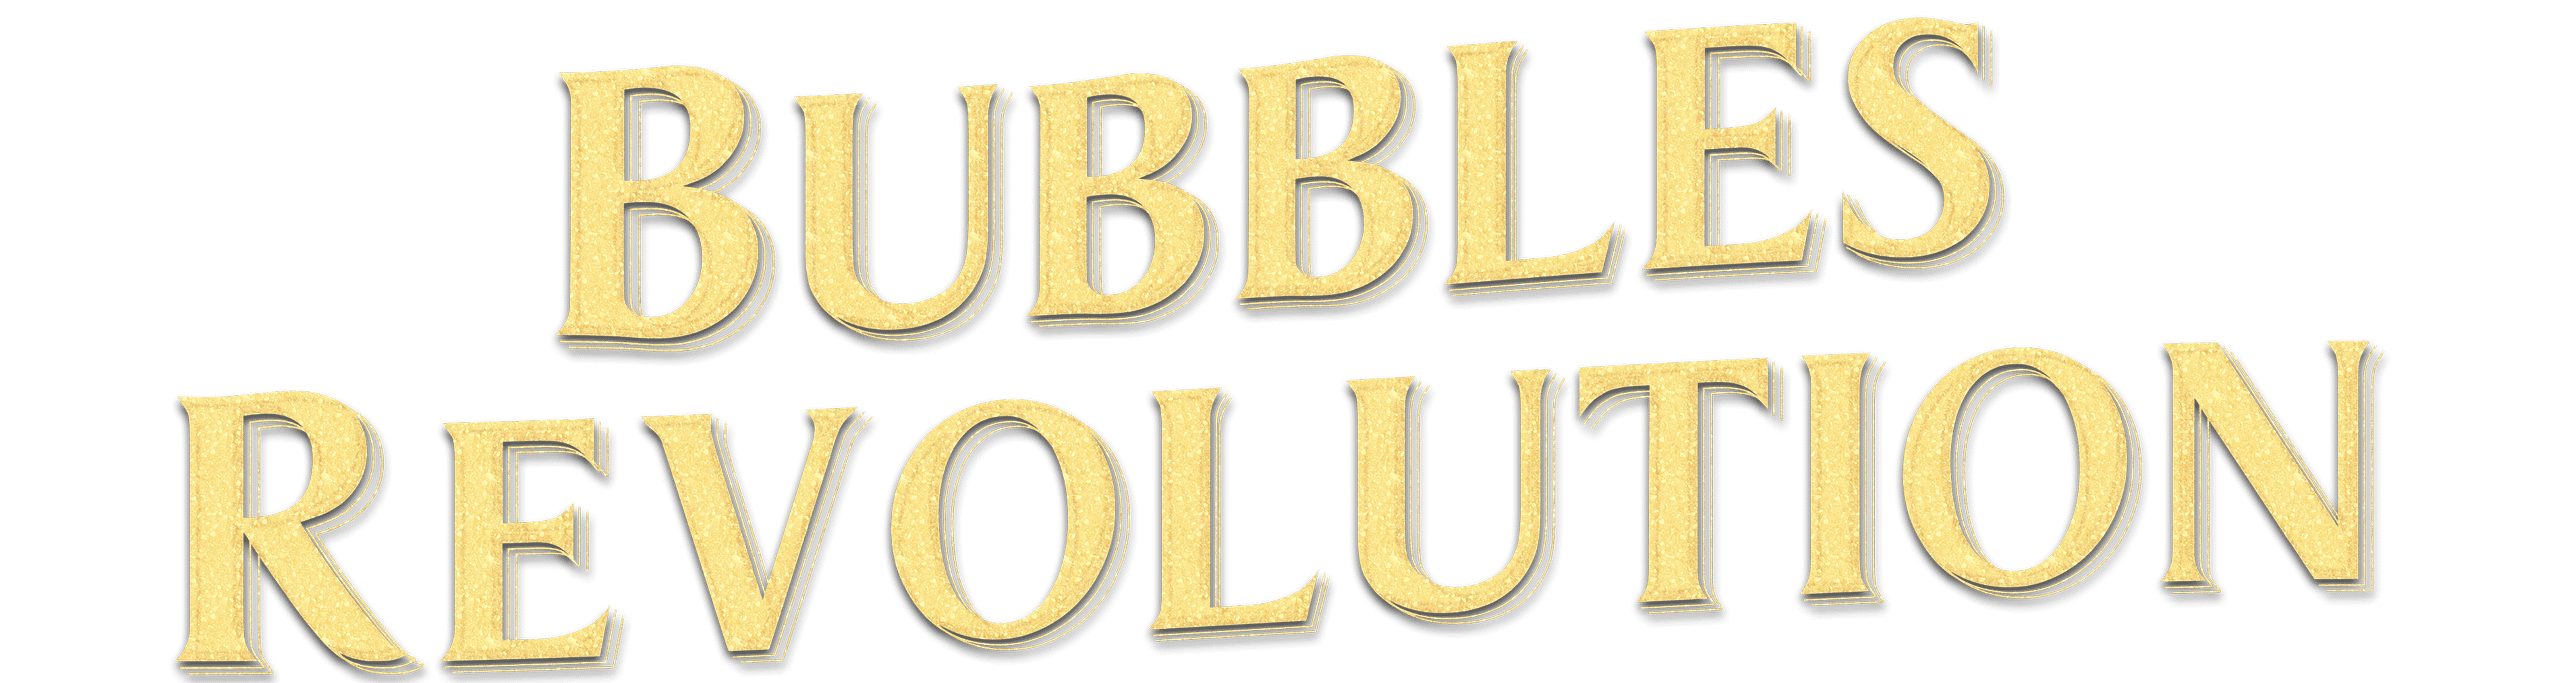 BuBBles Revolution